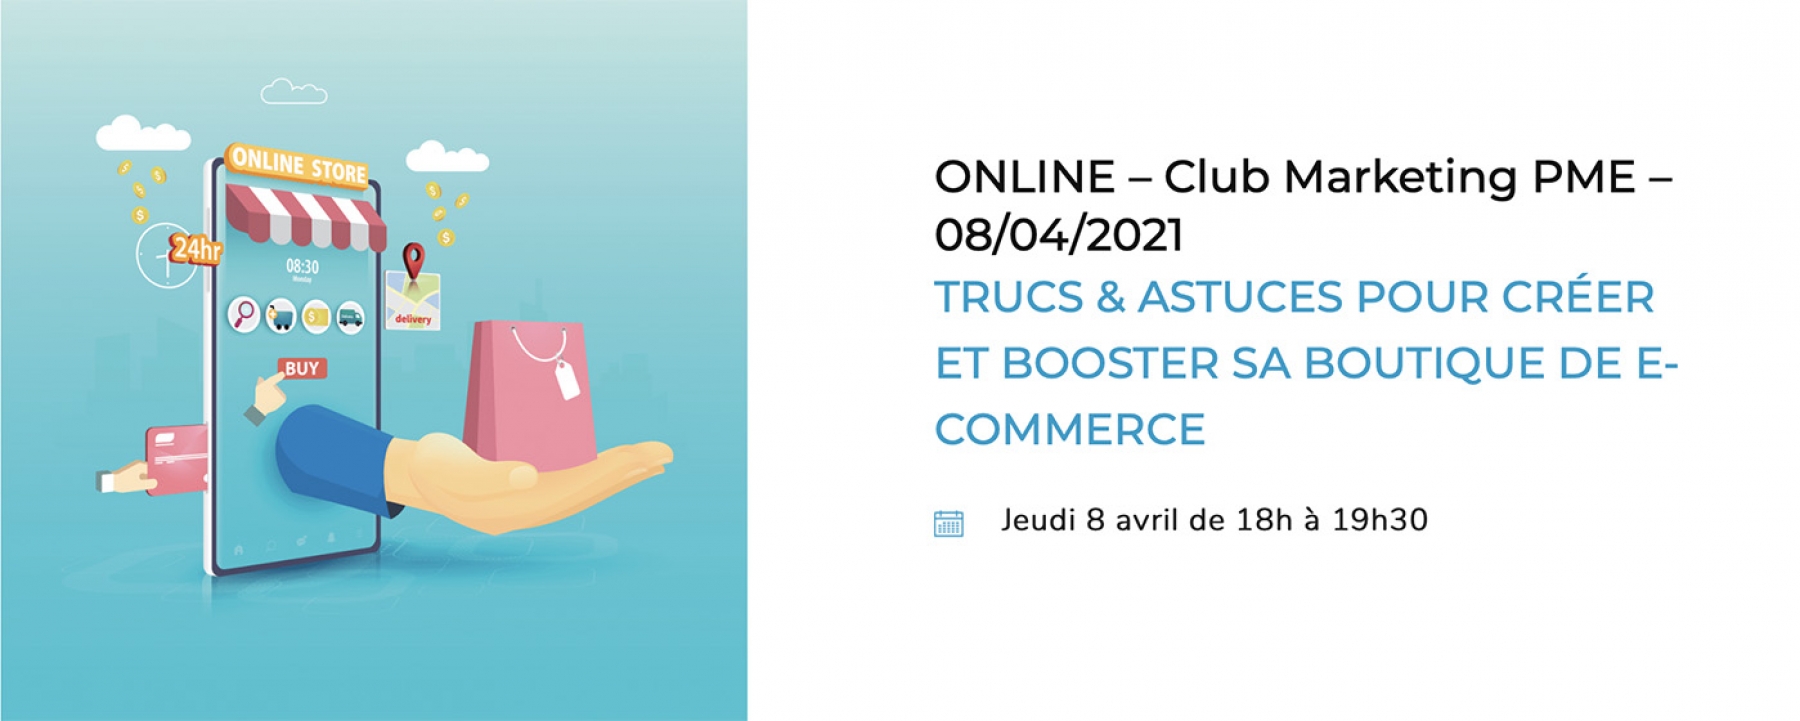 Trucs & astuces pour créer et booster sa boutique de e-commerce, organisé en ligne par Adetem le jeudi 8 avril 2021